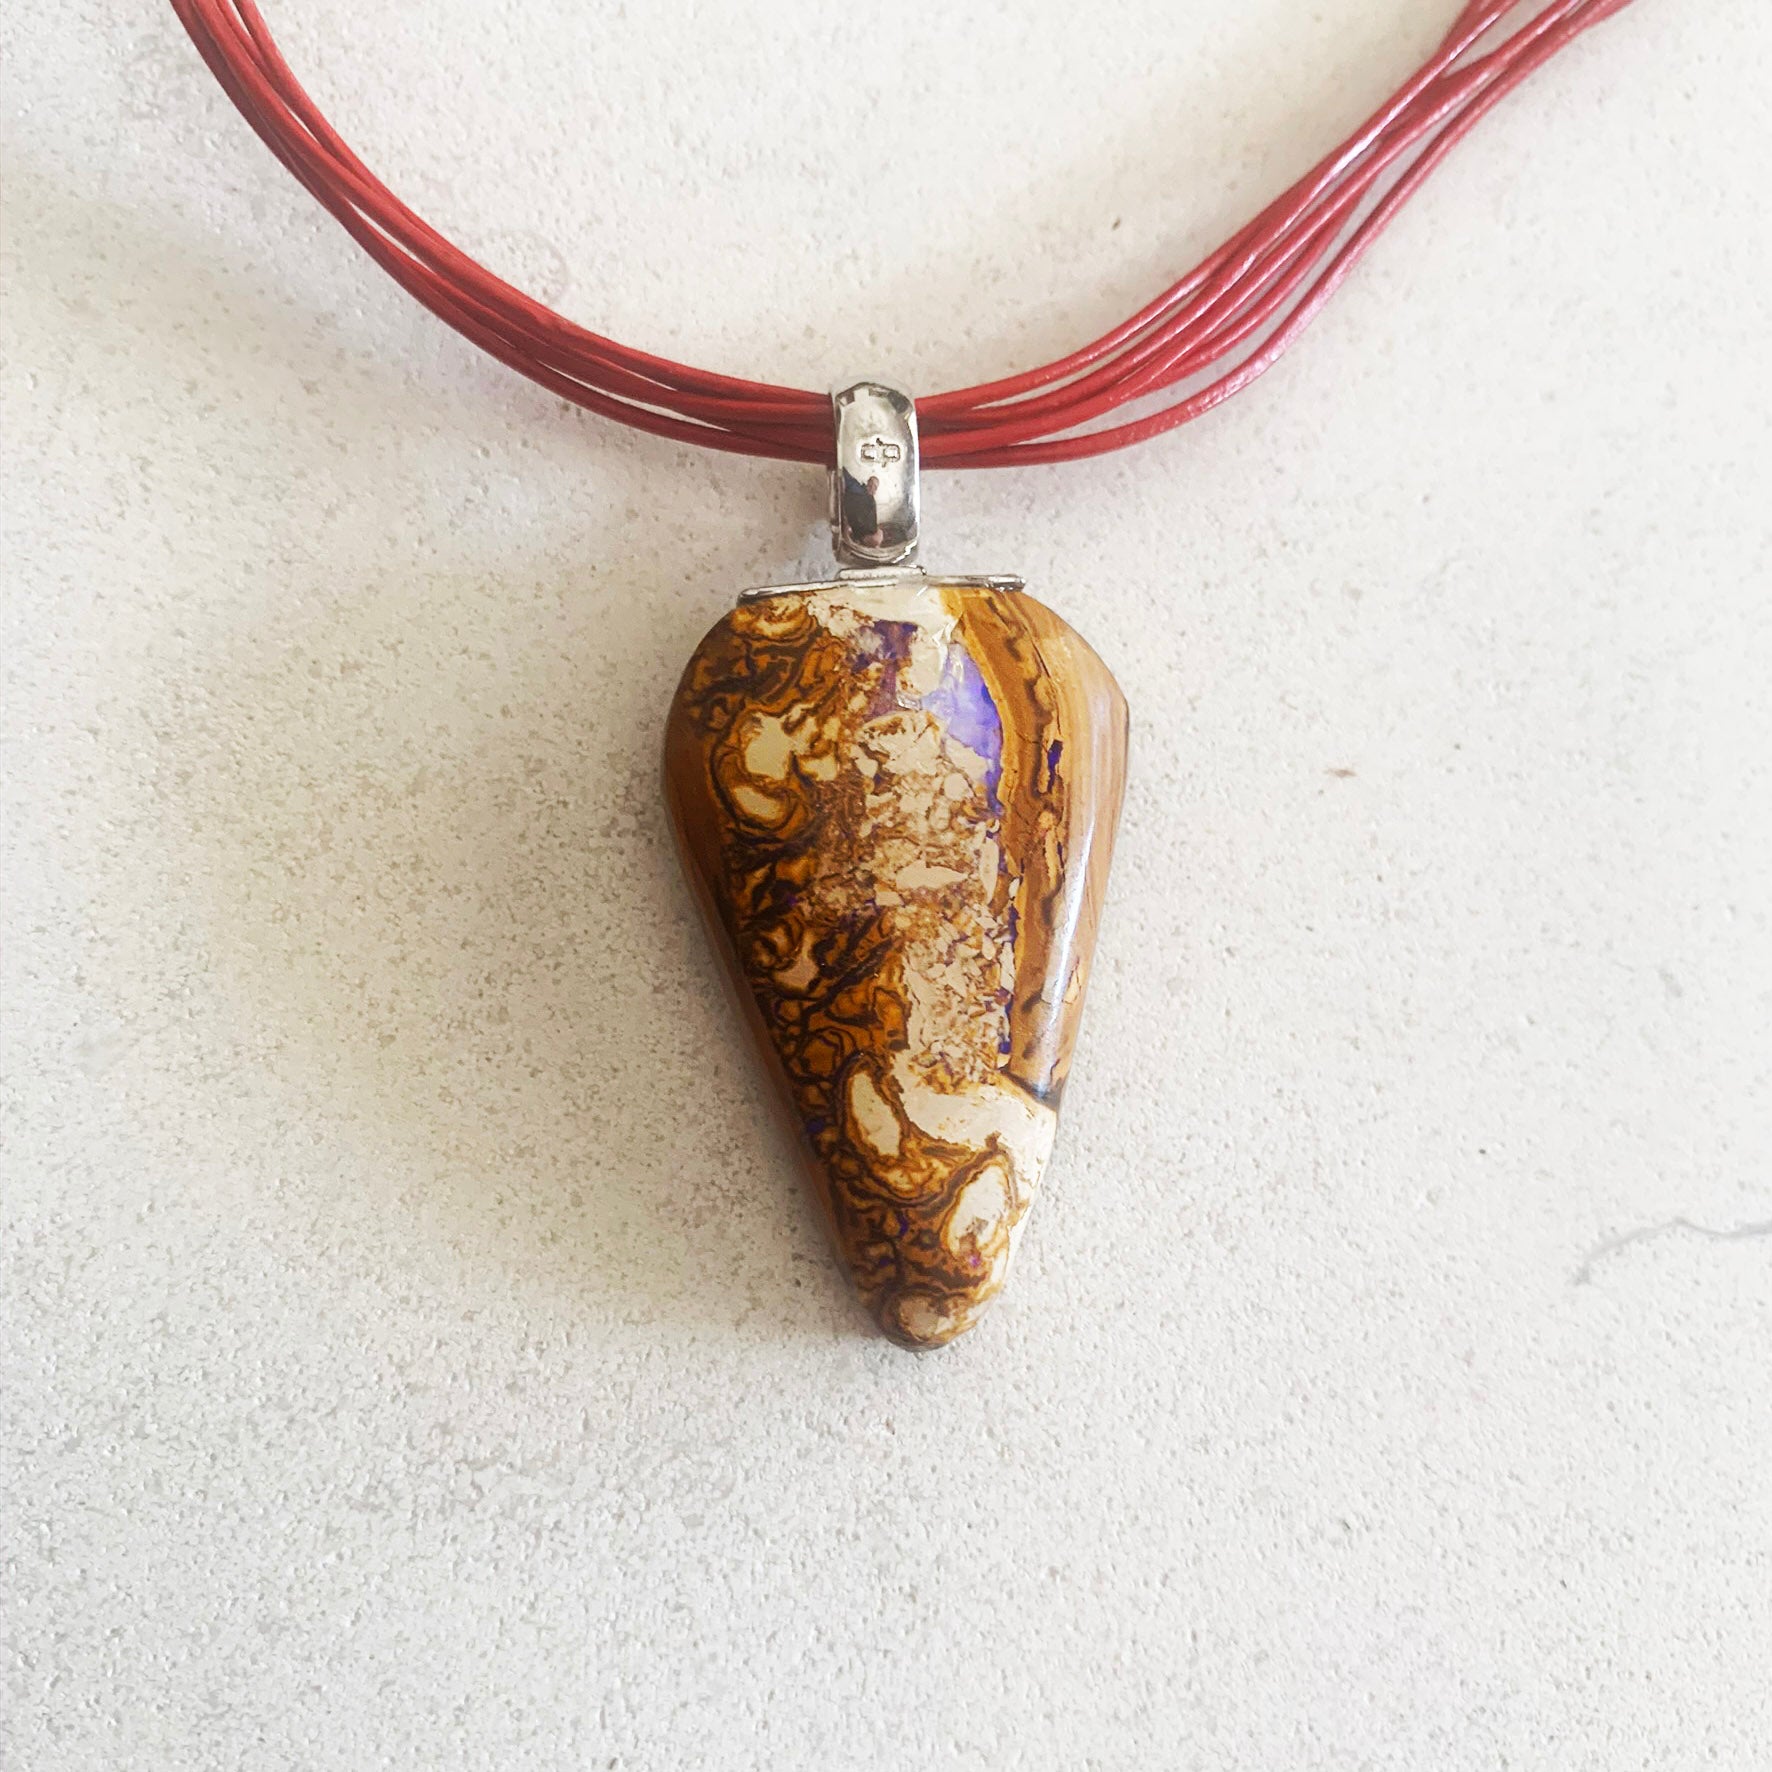 Boulder opal pendant on leather strand necklet